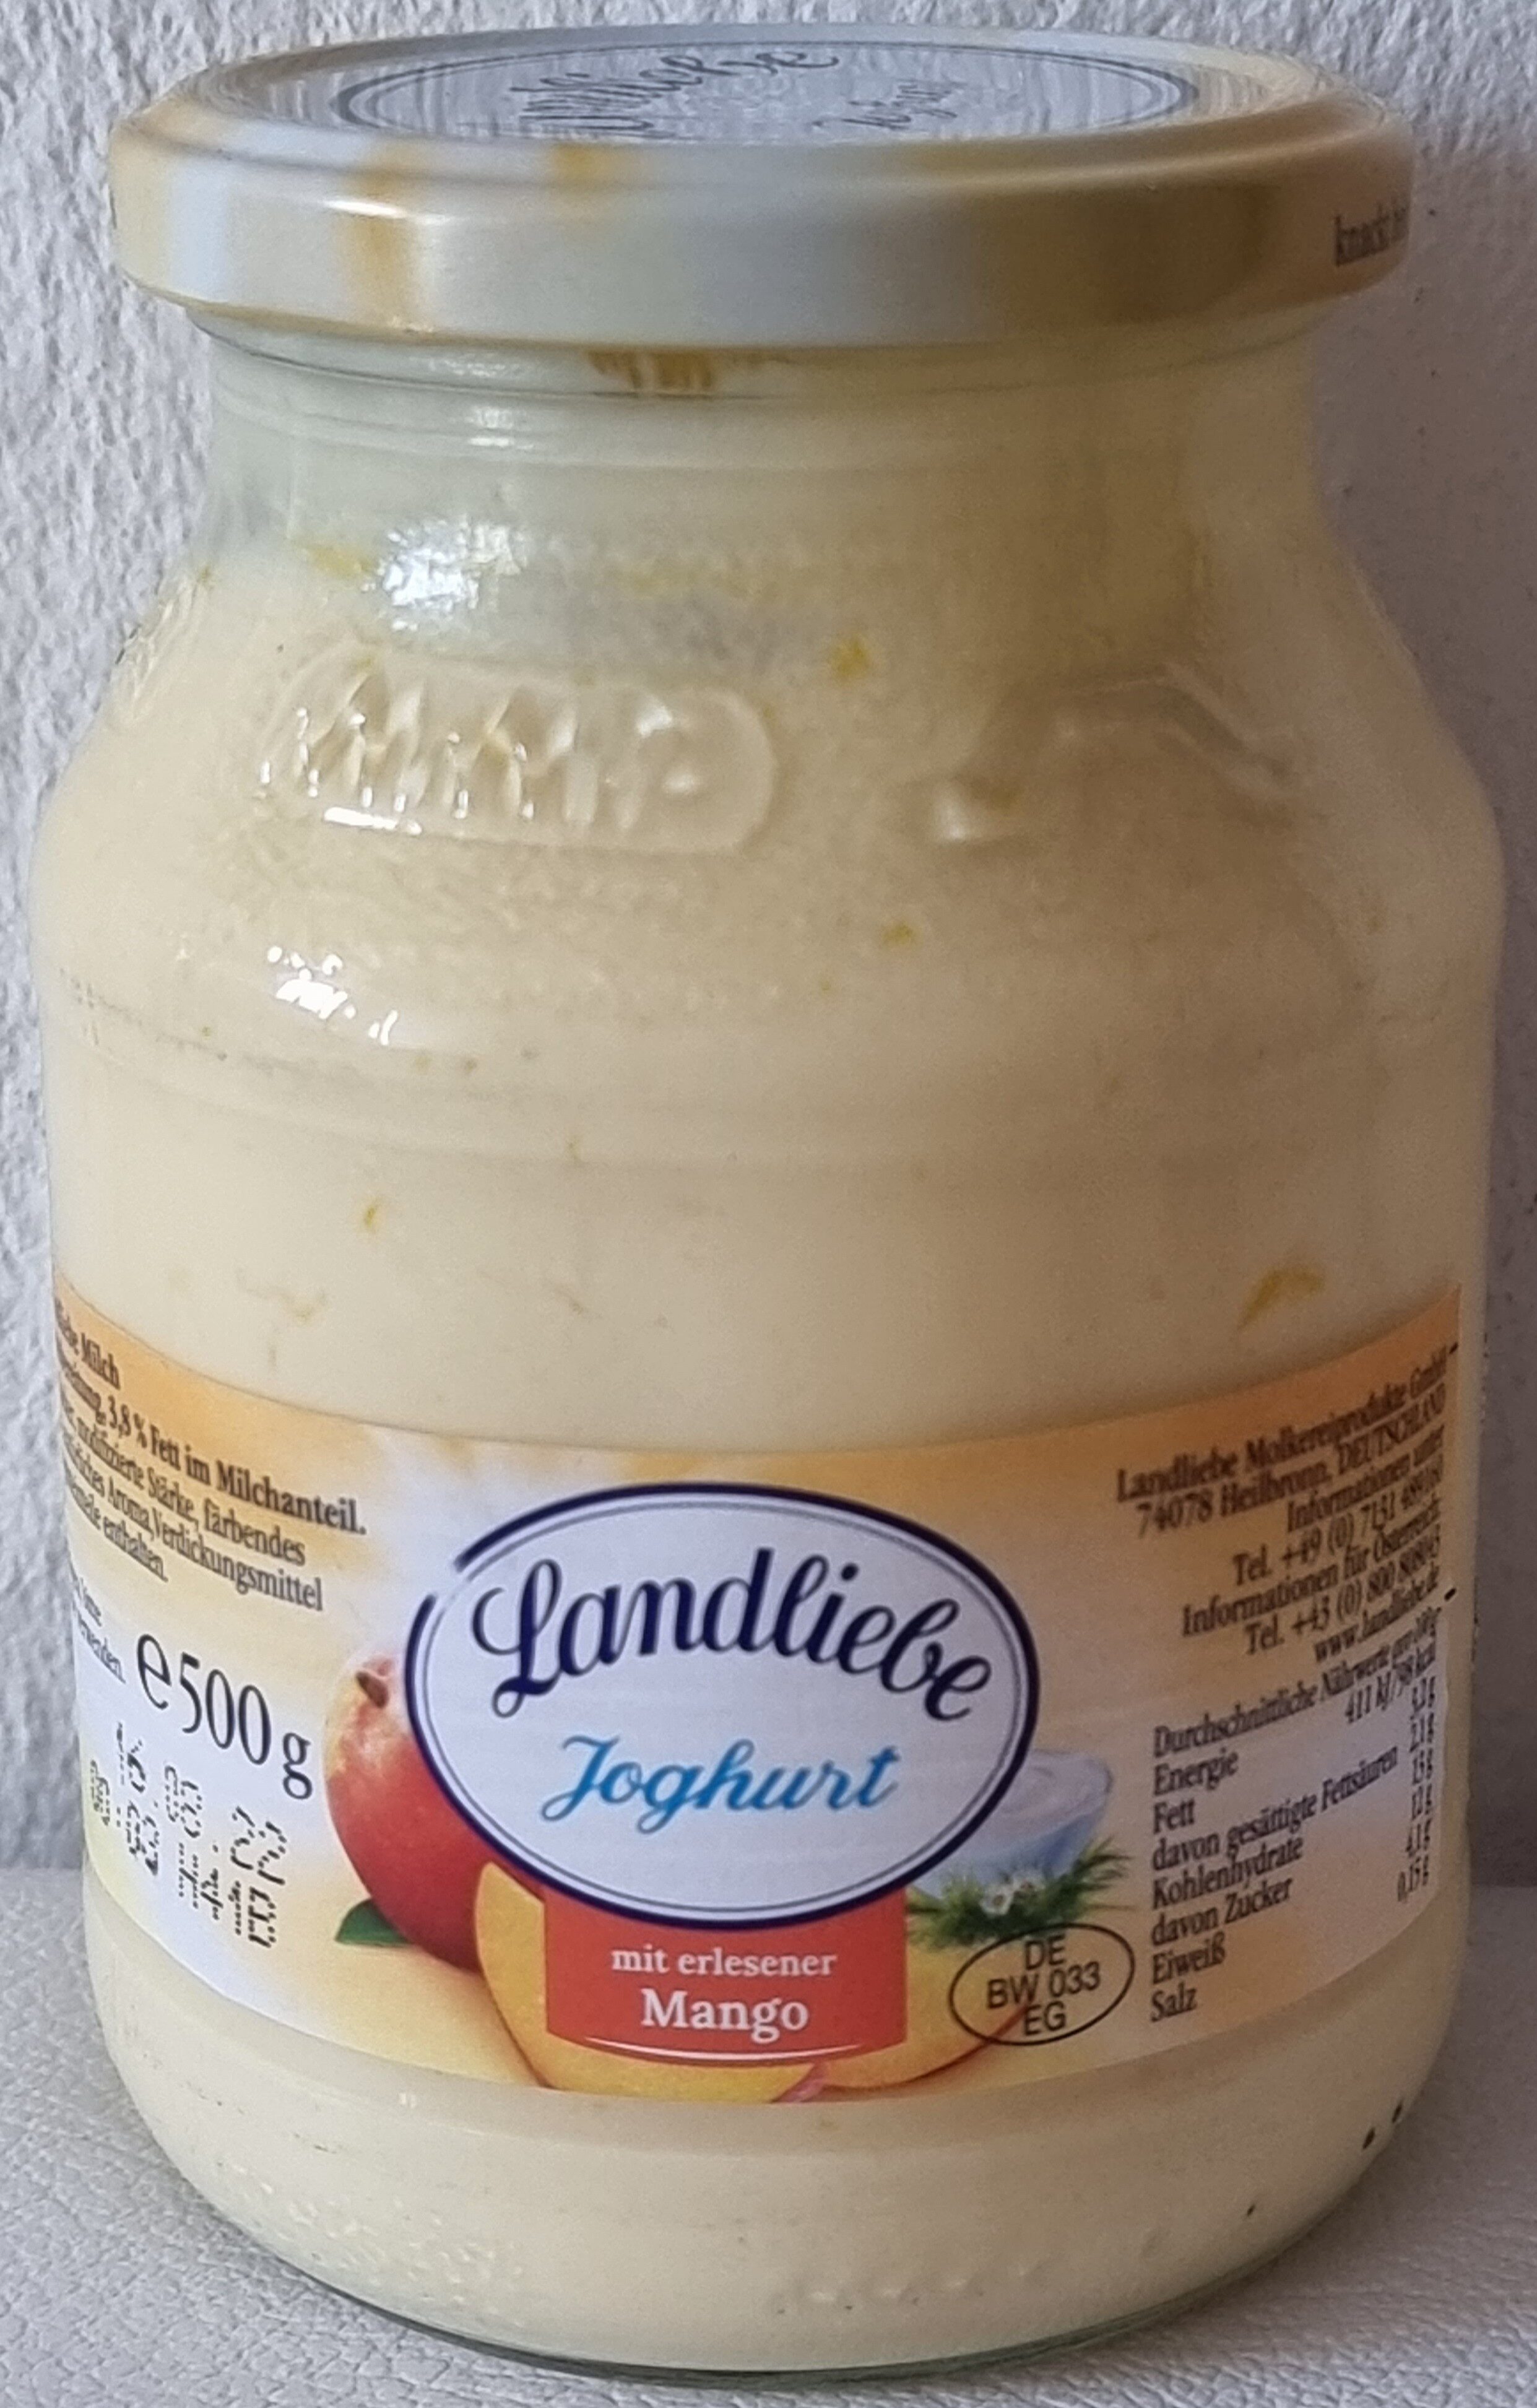 Joghurt mit erlesener Mango - Produkt